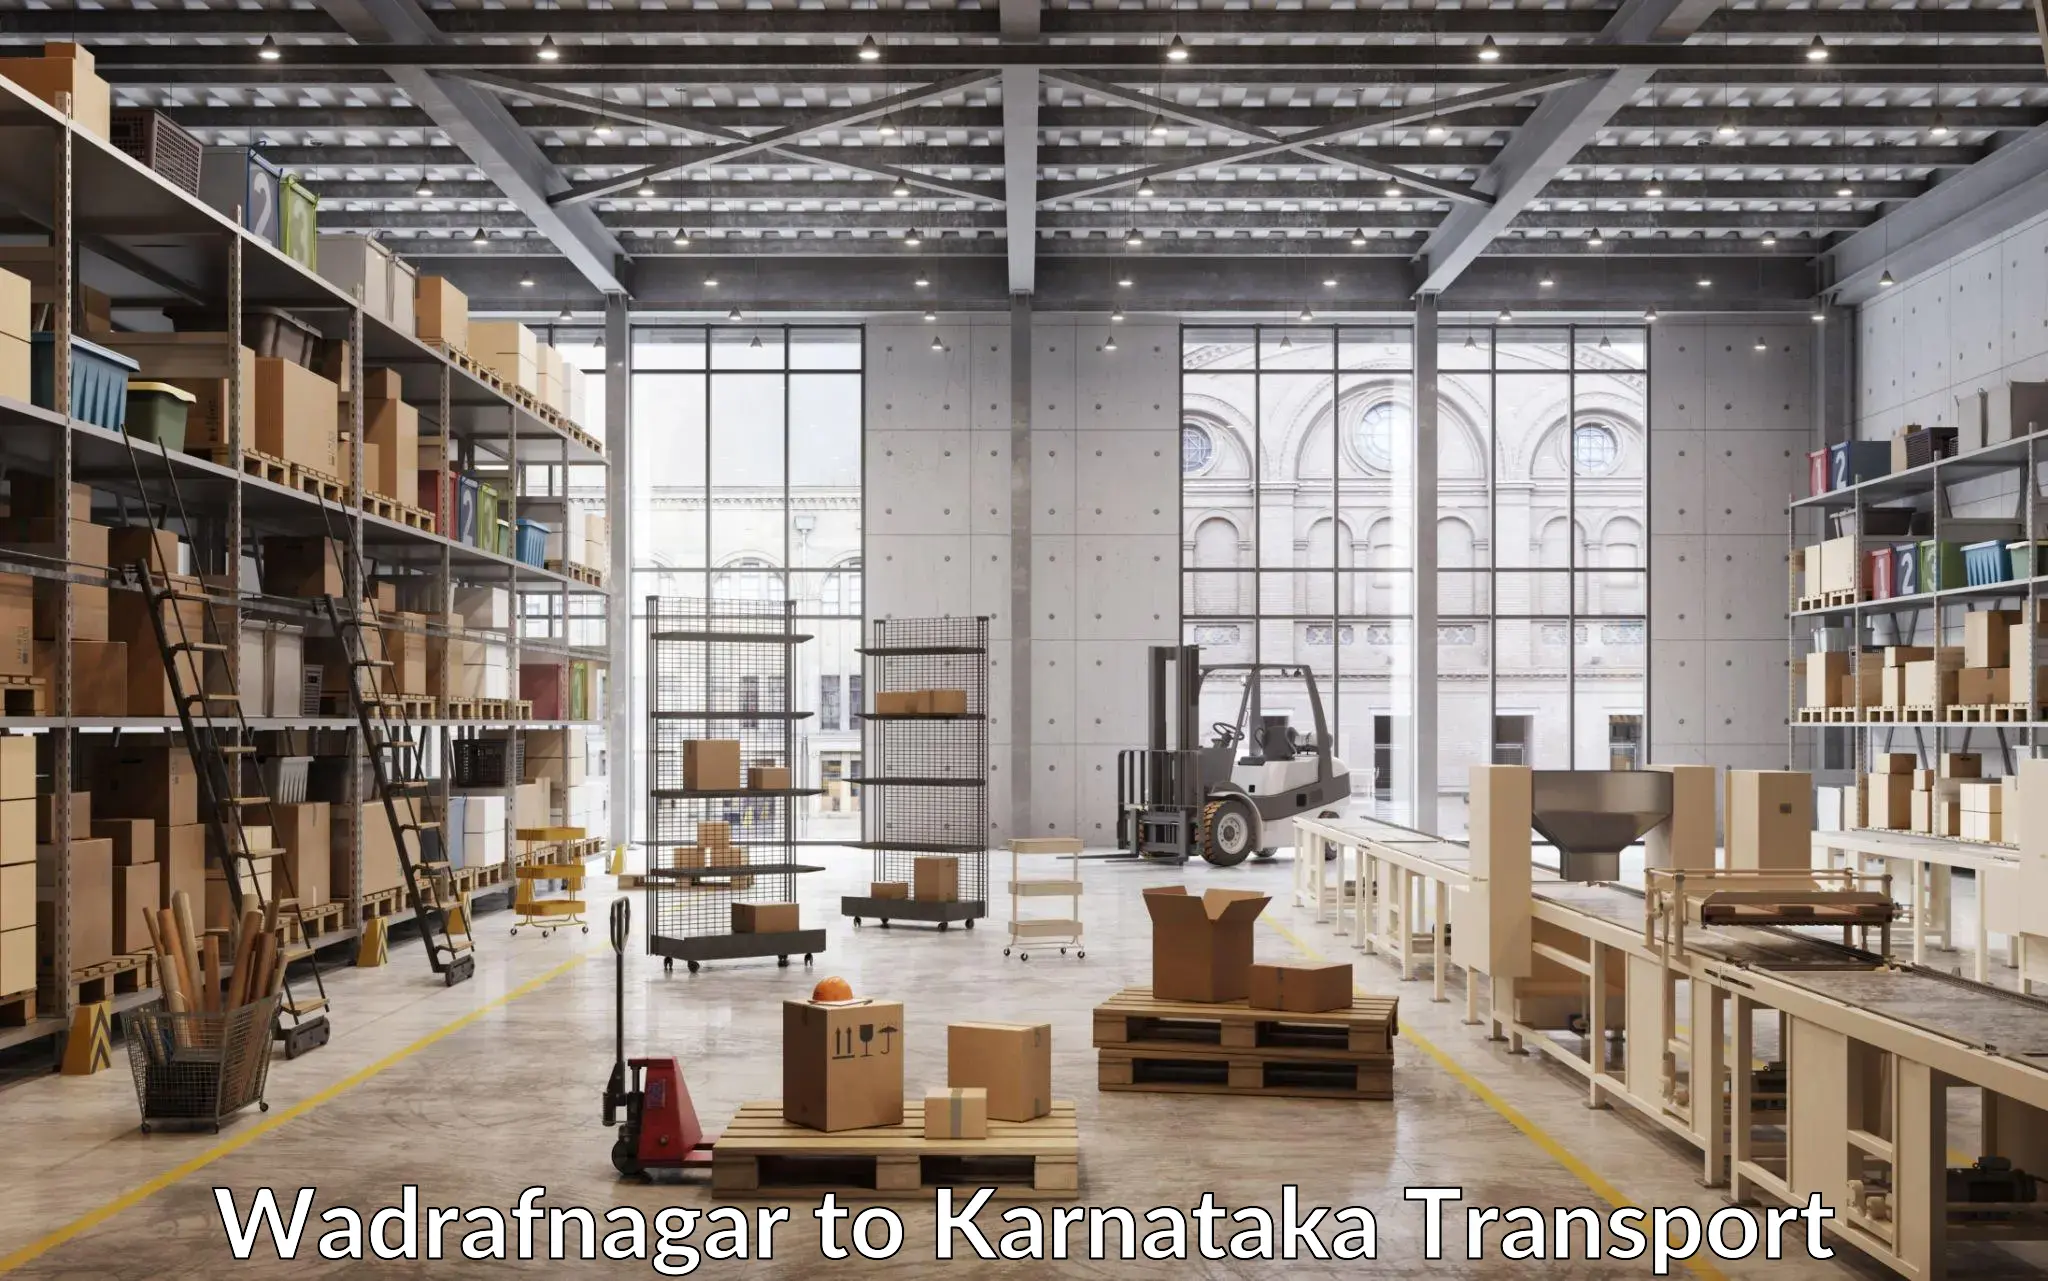 Transportation solution services Wadrafnagar to Dakshina Kannada